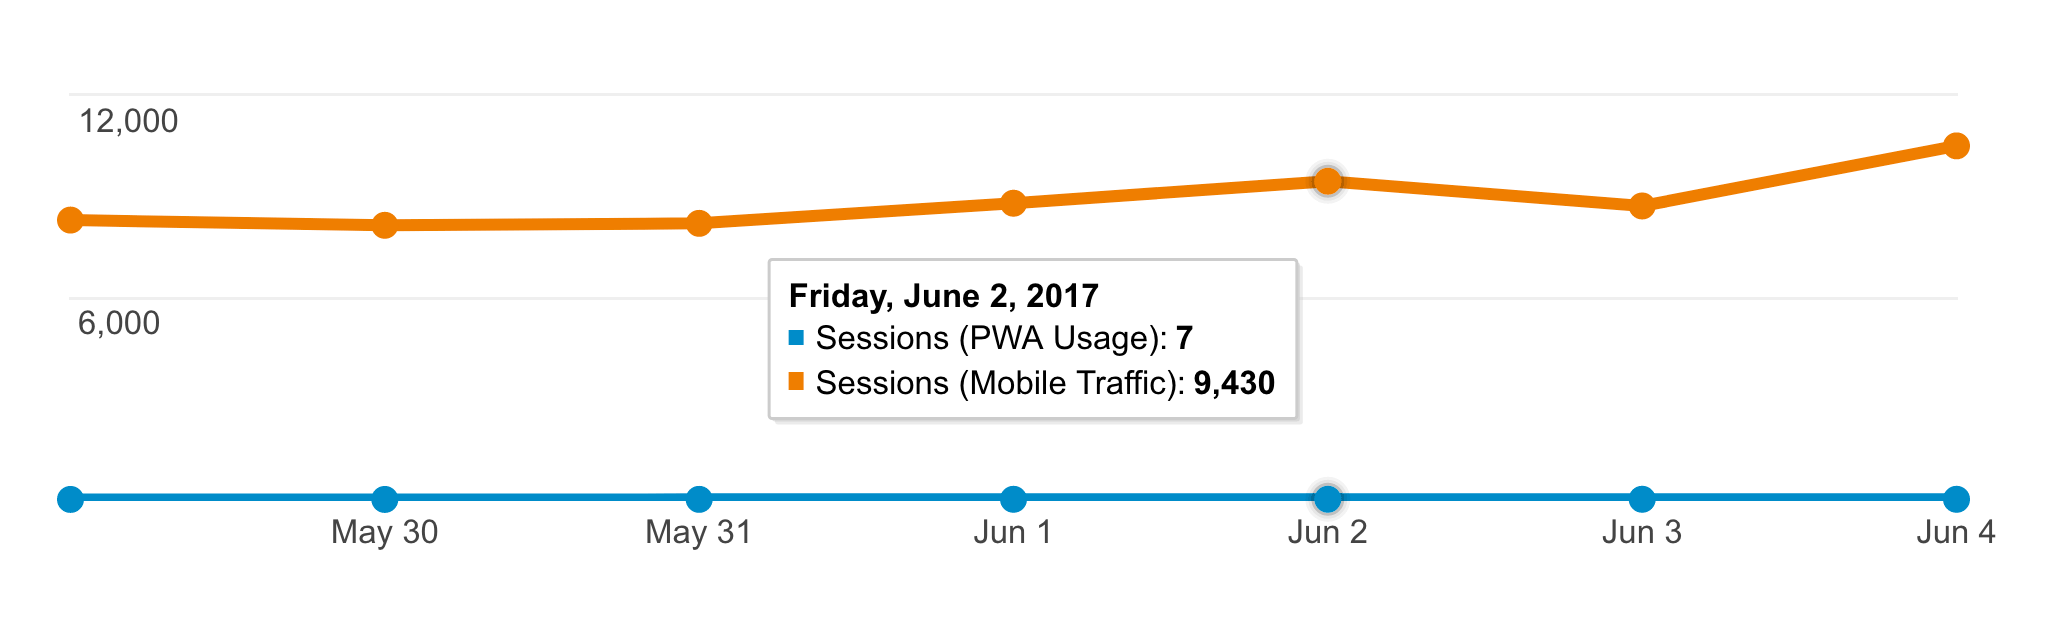 PWA usage in May 2017